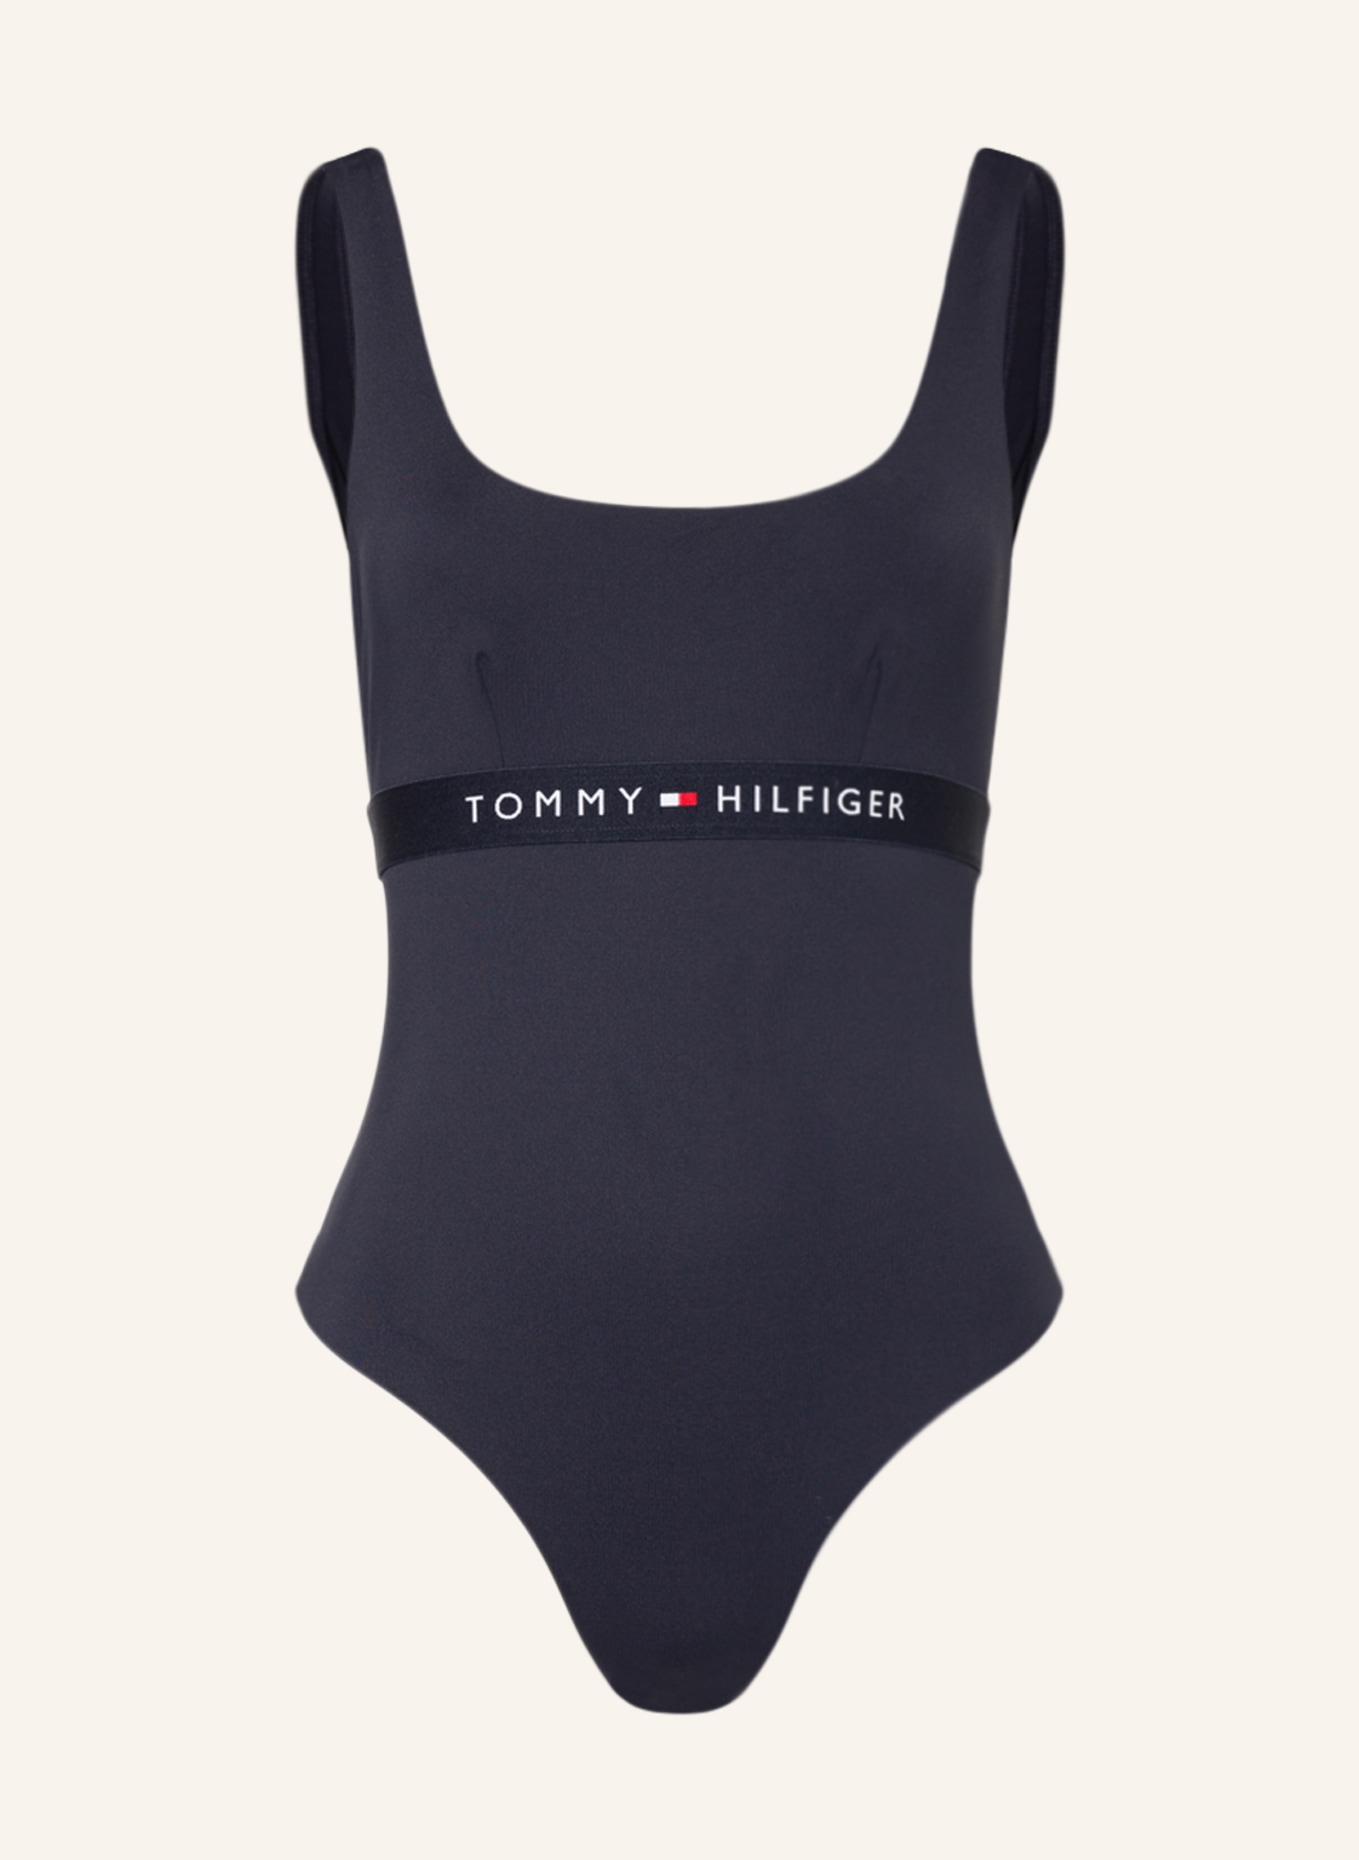 TOMMY HILFIGER Swimsuit, Color: DARK BLUE (Image 1)